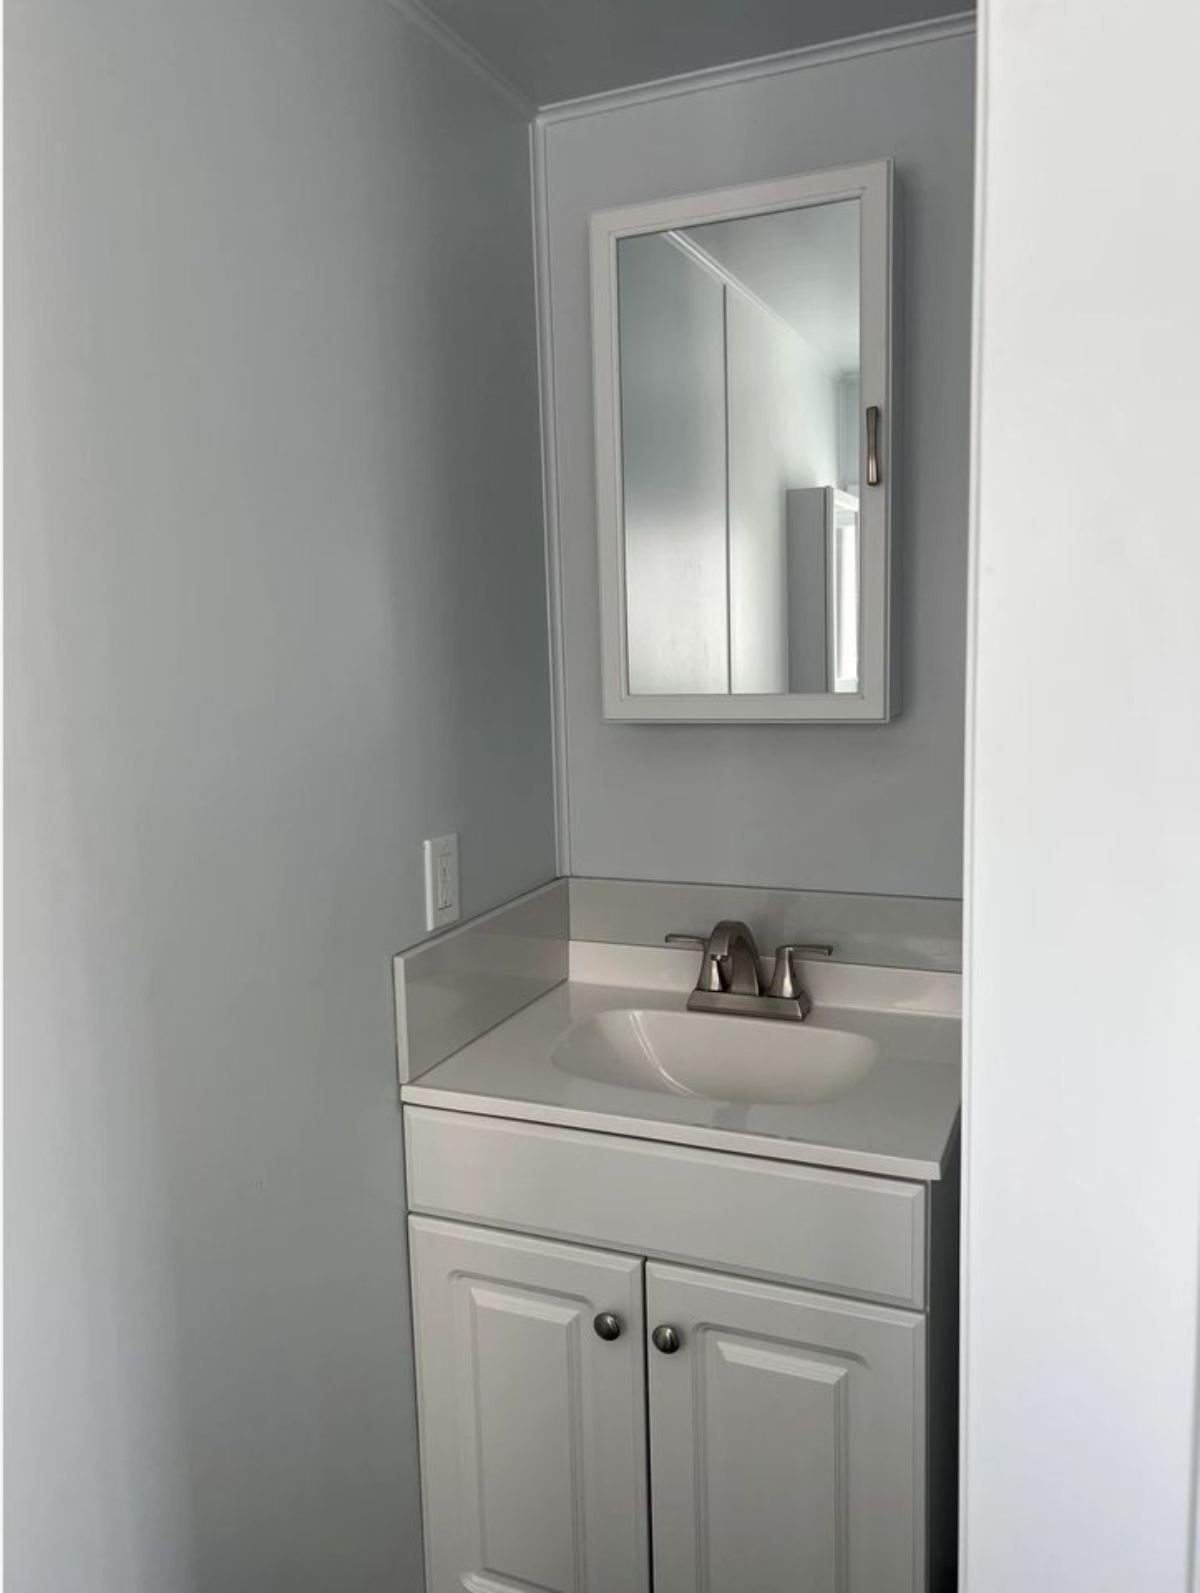 sink with vanity & mirror in bathroom